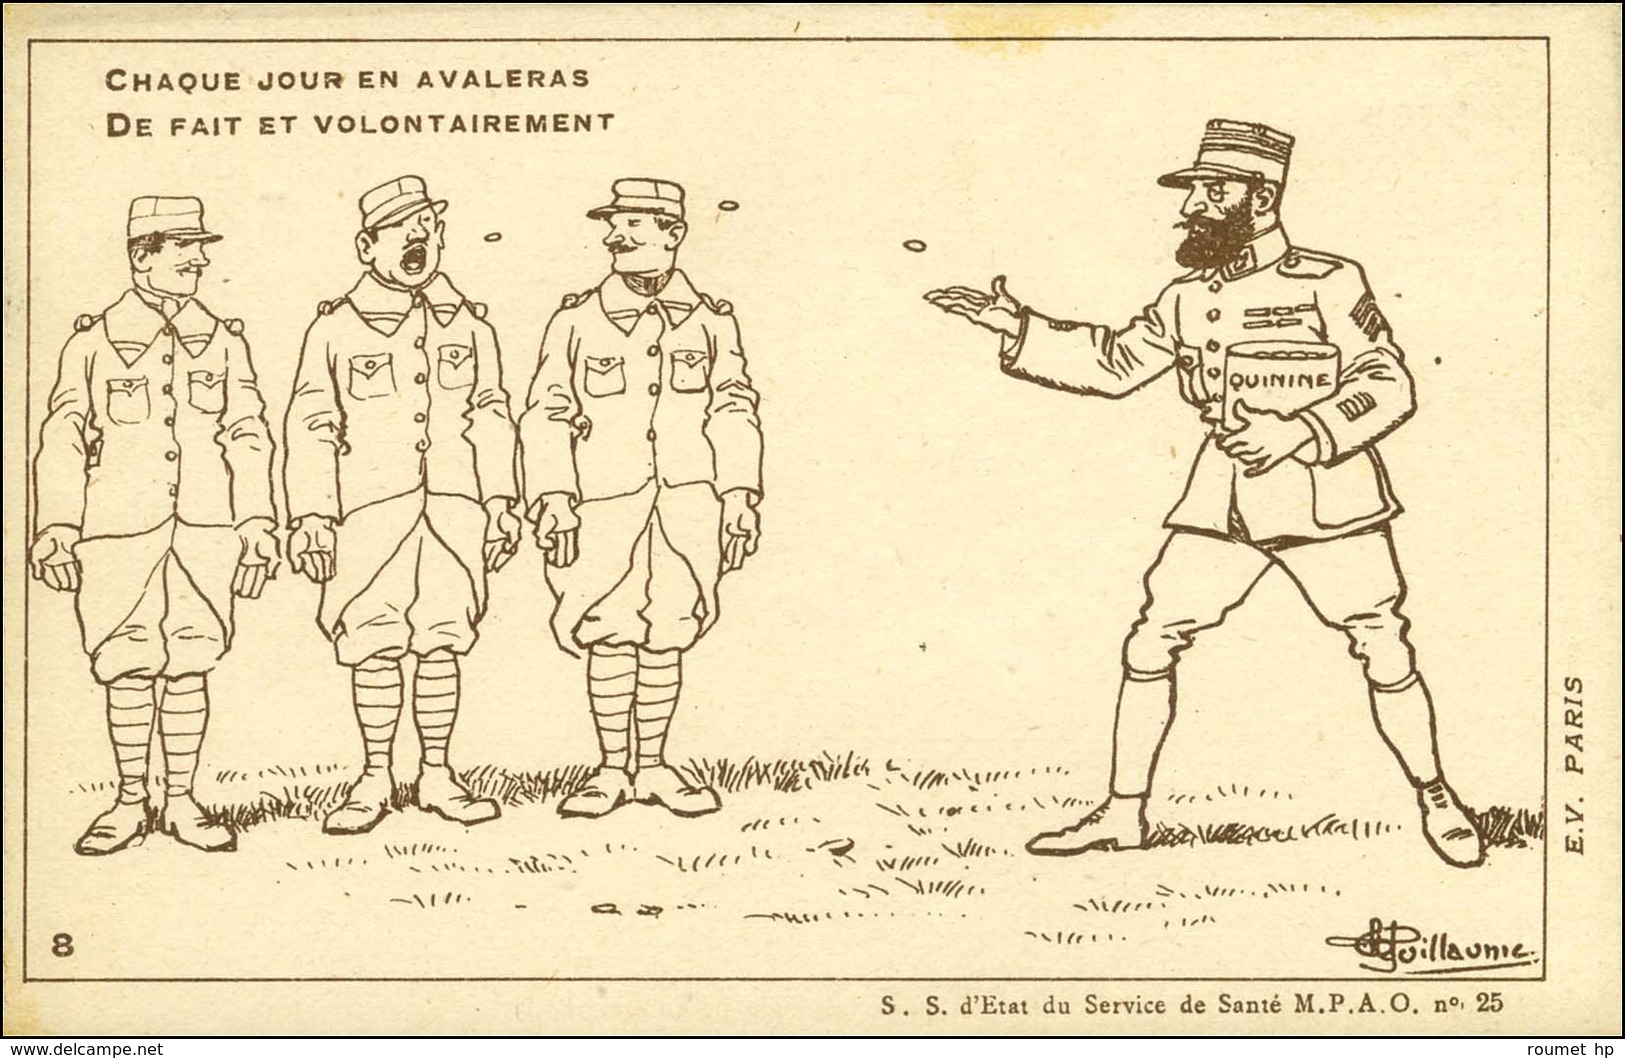 Série de 10 CP illustrées (N & B) numérotées de 1 à 10 Commandements de l'Institut Pasteur pour le Soldat de l'Armée d'O